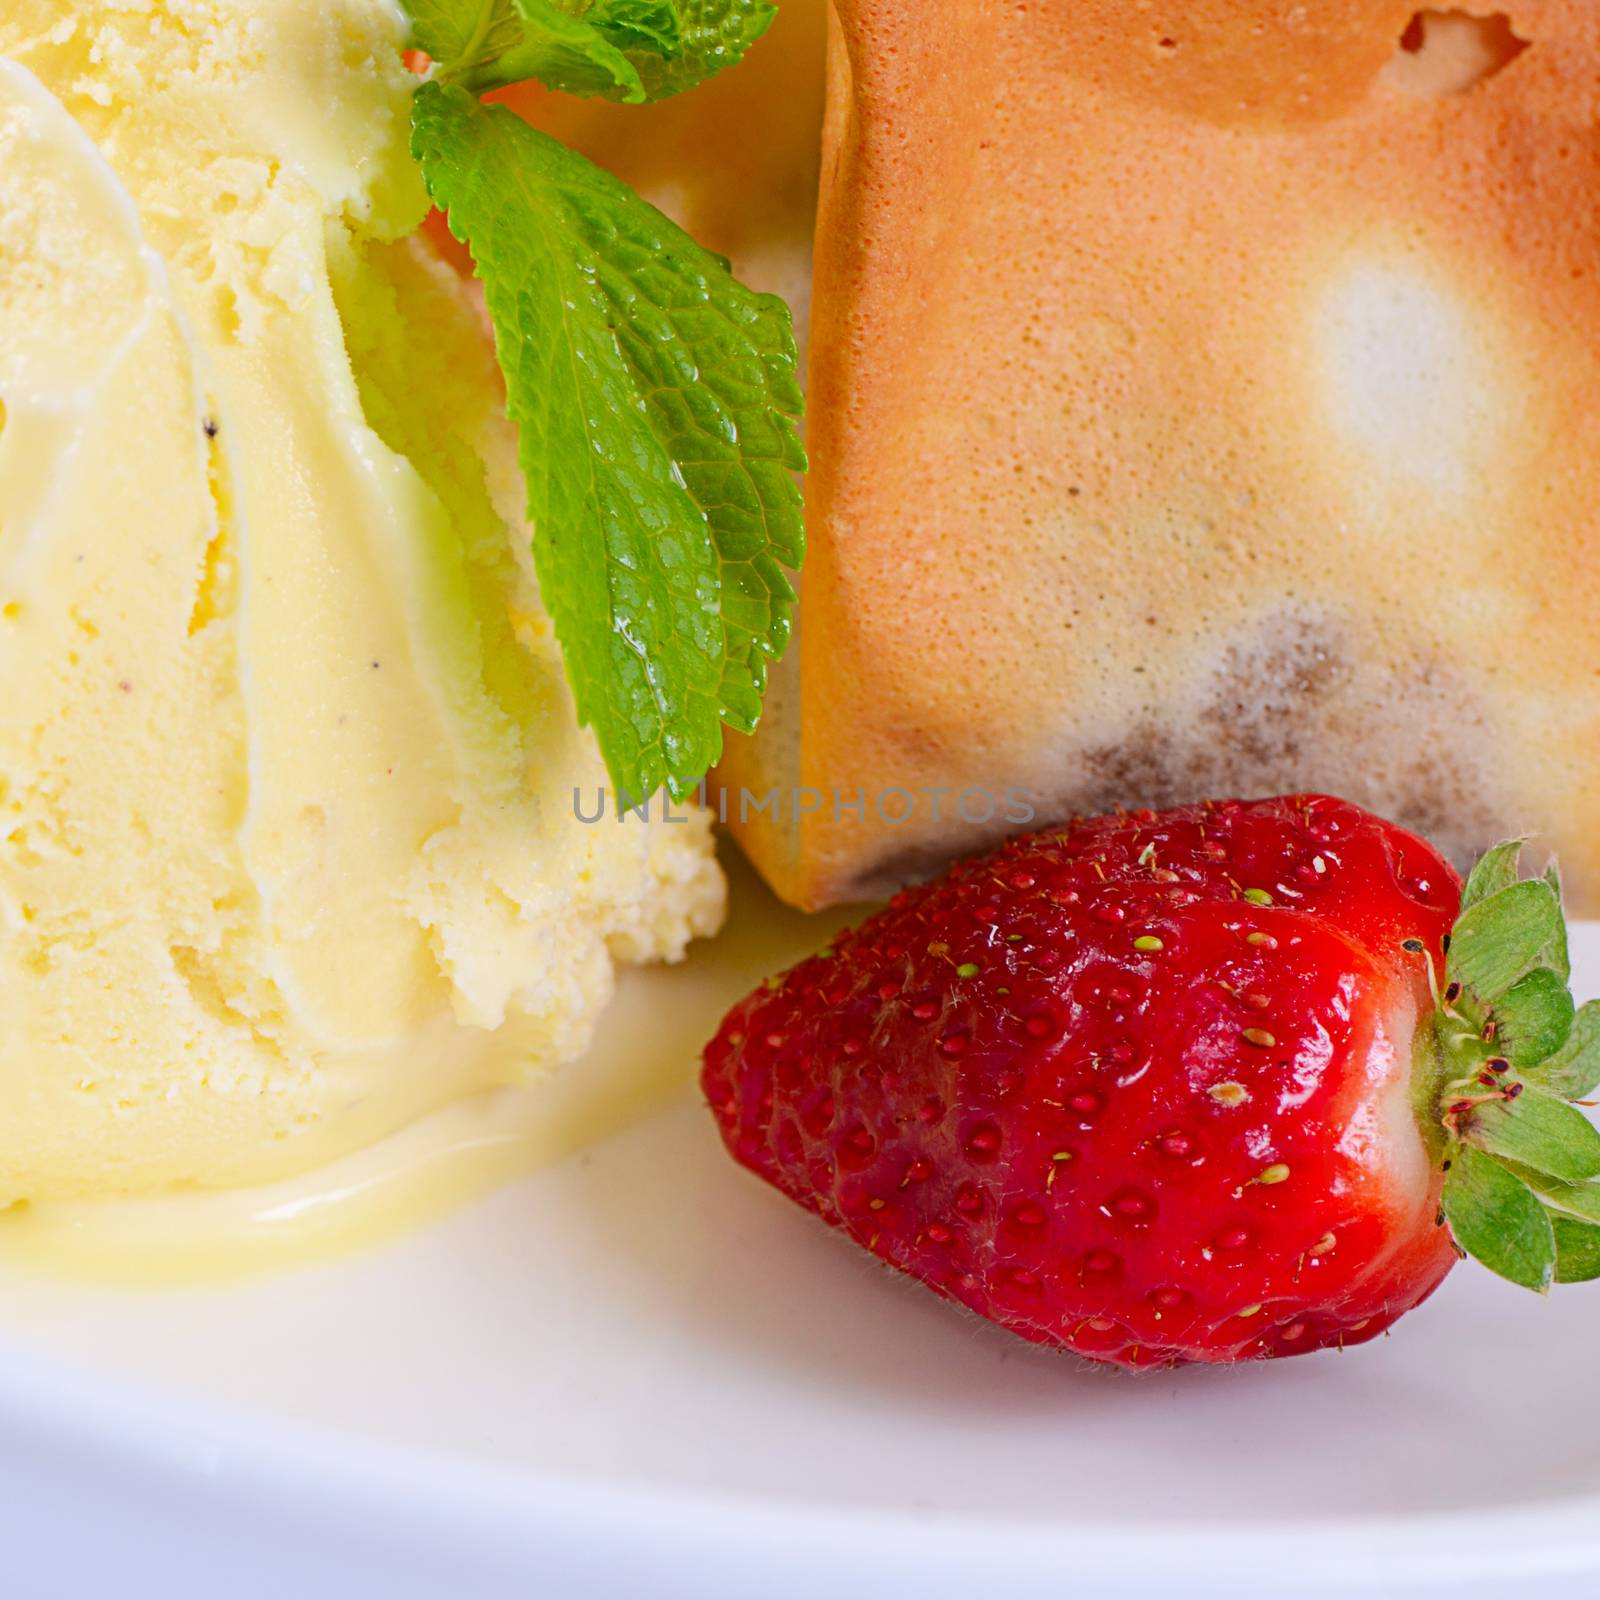 The vanilla ice cream with fresh  strawberries